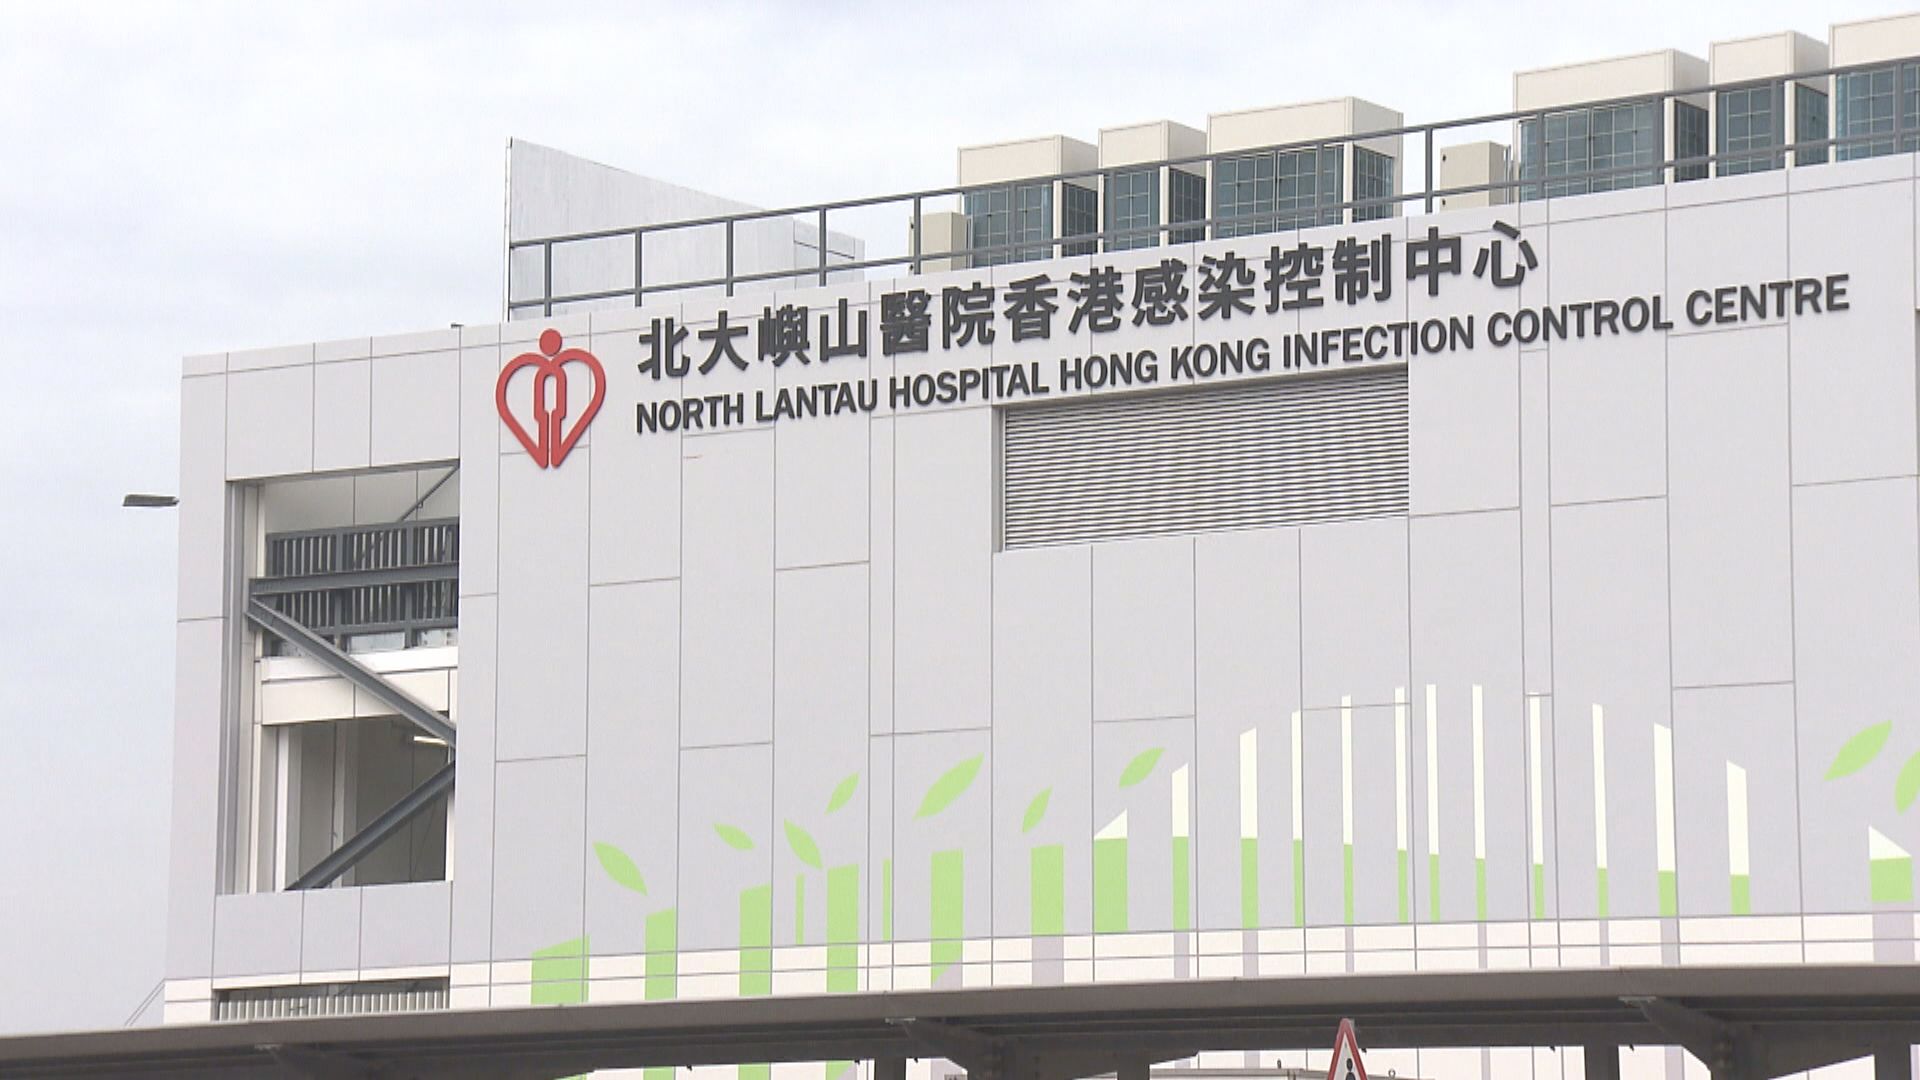 北大嶼山醫院香港感染控制中心冀本月26日啟用